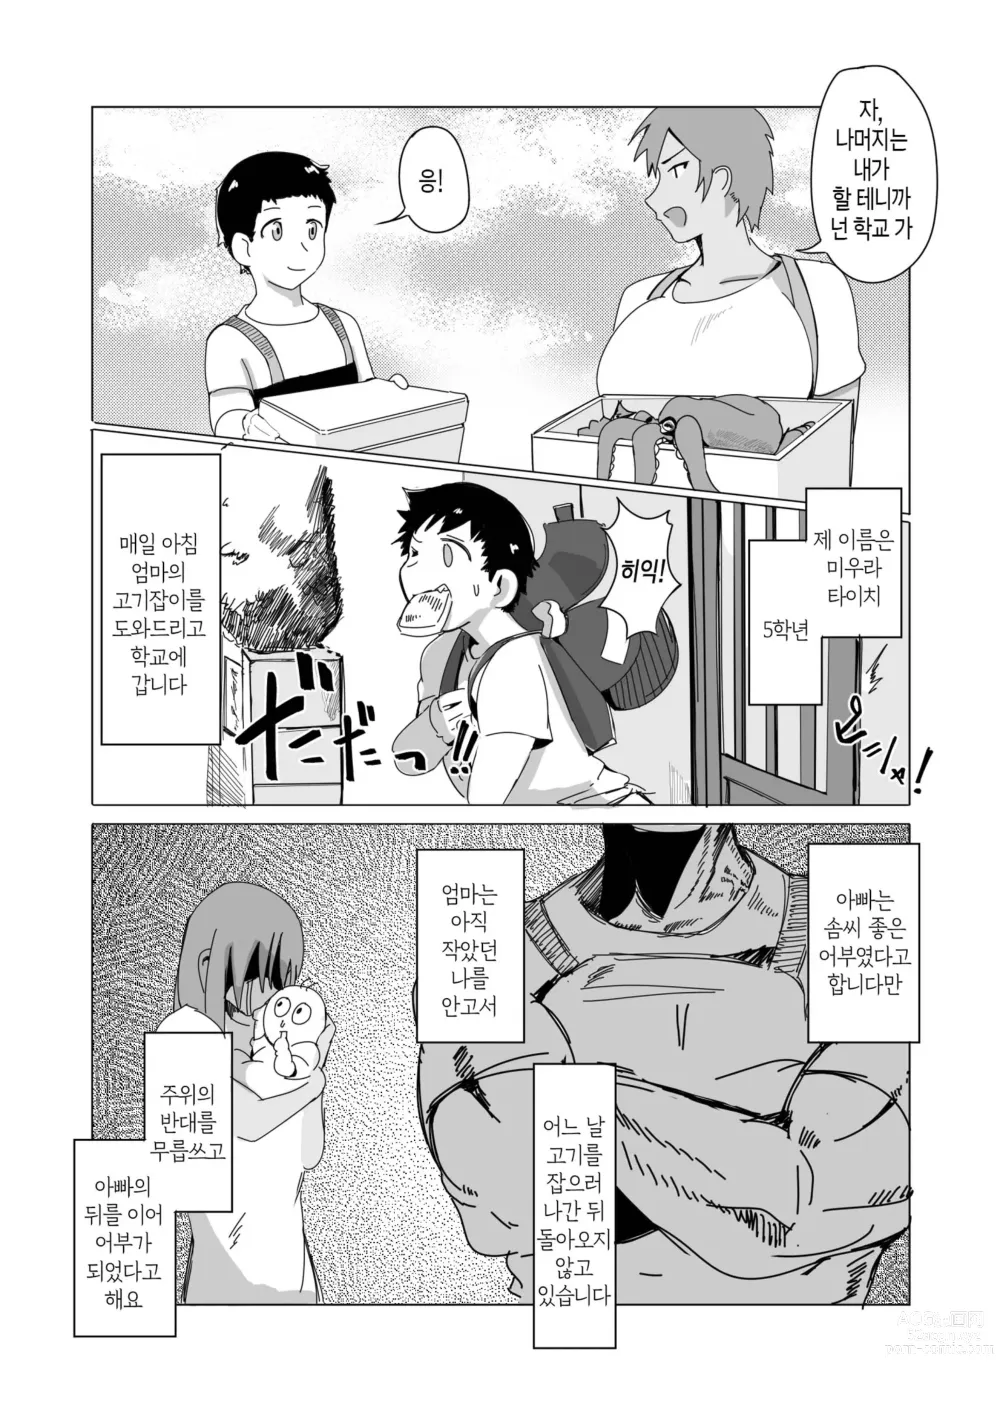 Page 4 of doujinshi 엄마의 바다로 - 나와 엄마의 사랑 이야기